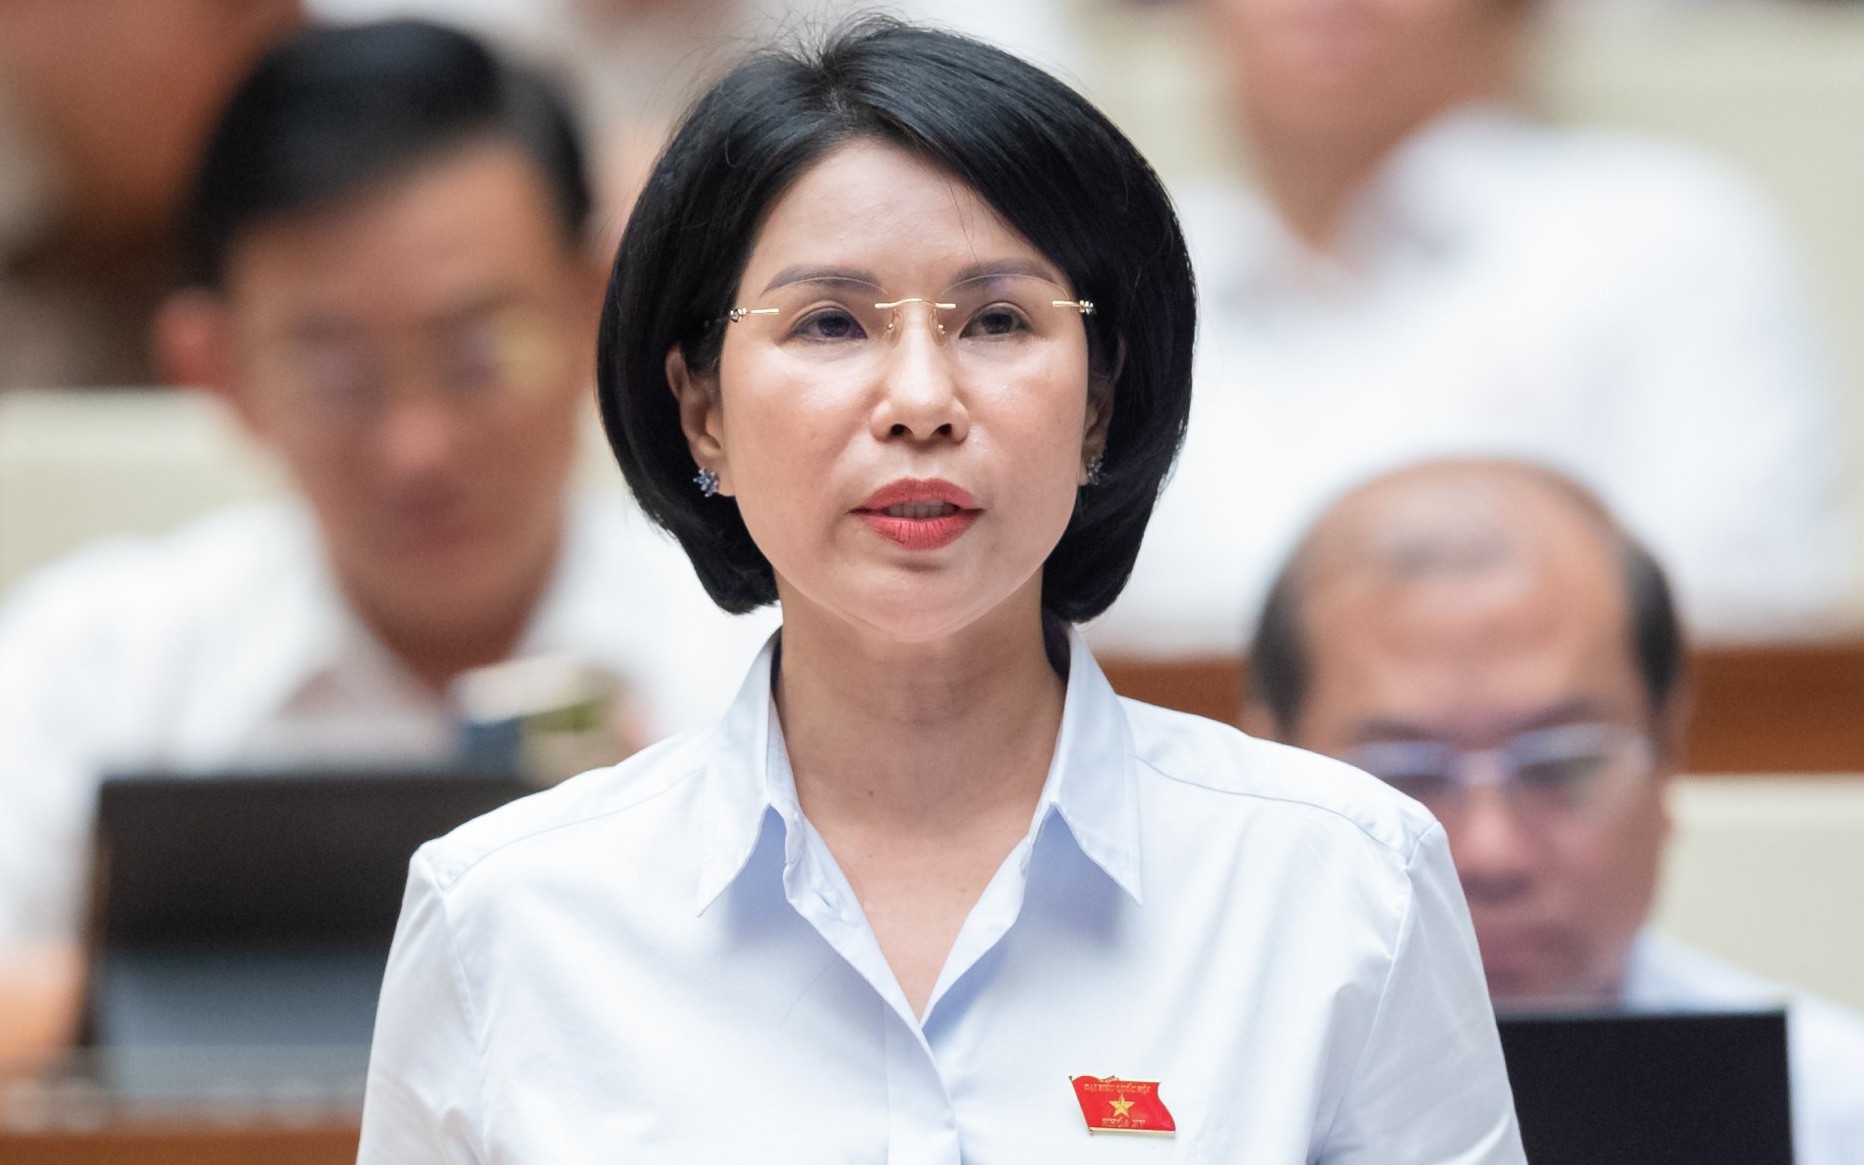 GĐ Sở Y tế Hà Nội Trần Thị Nhị Hà được bổ nhiệm làm Phó Trưởng Ban Dân nguyện